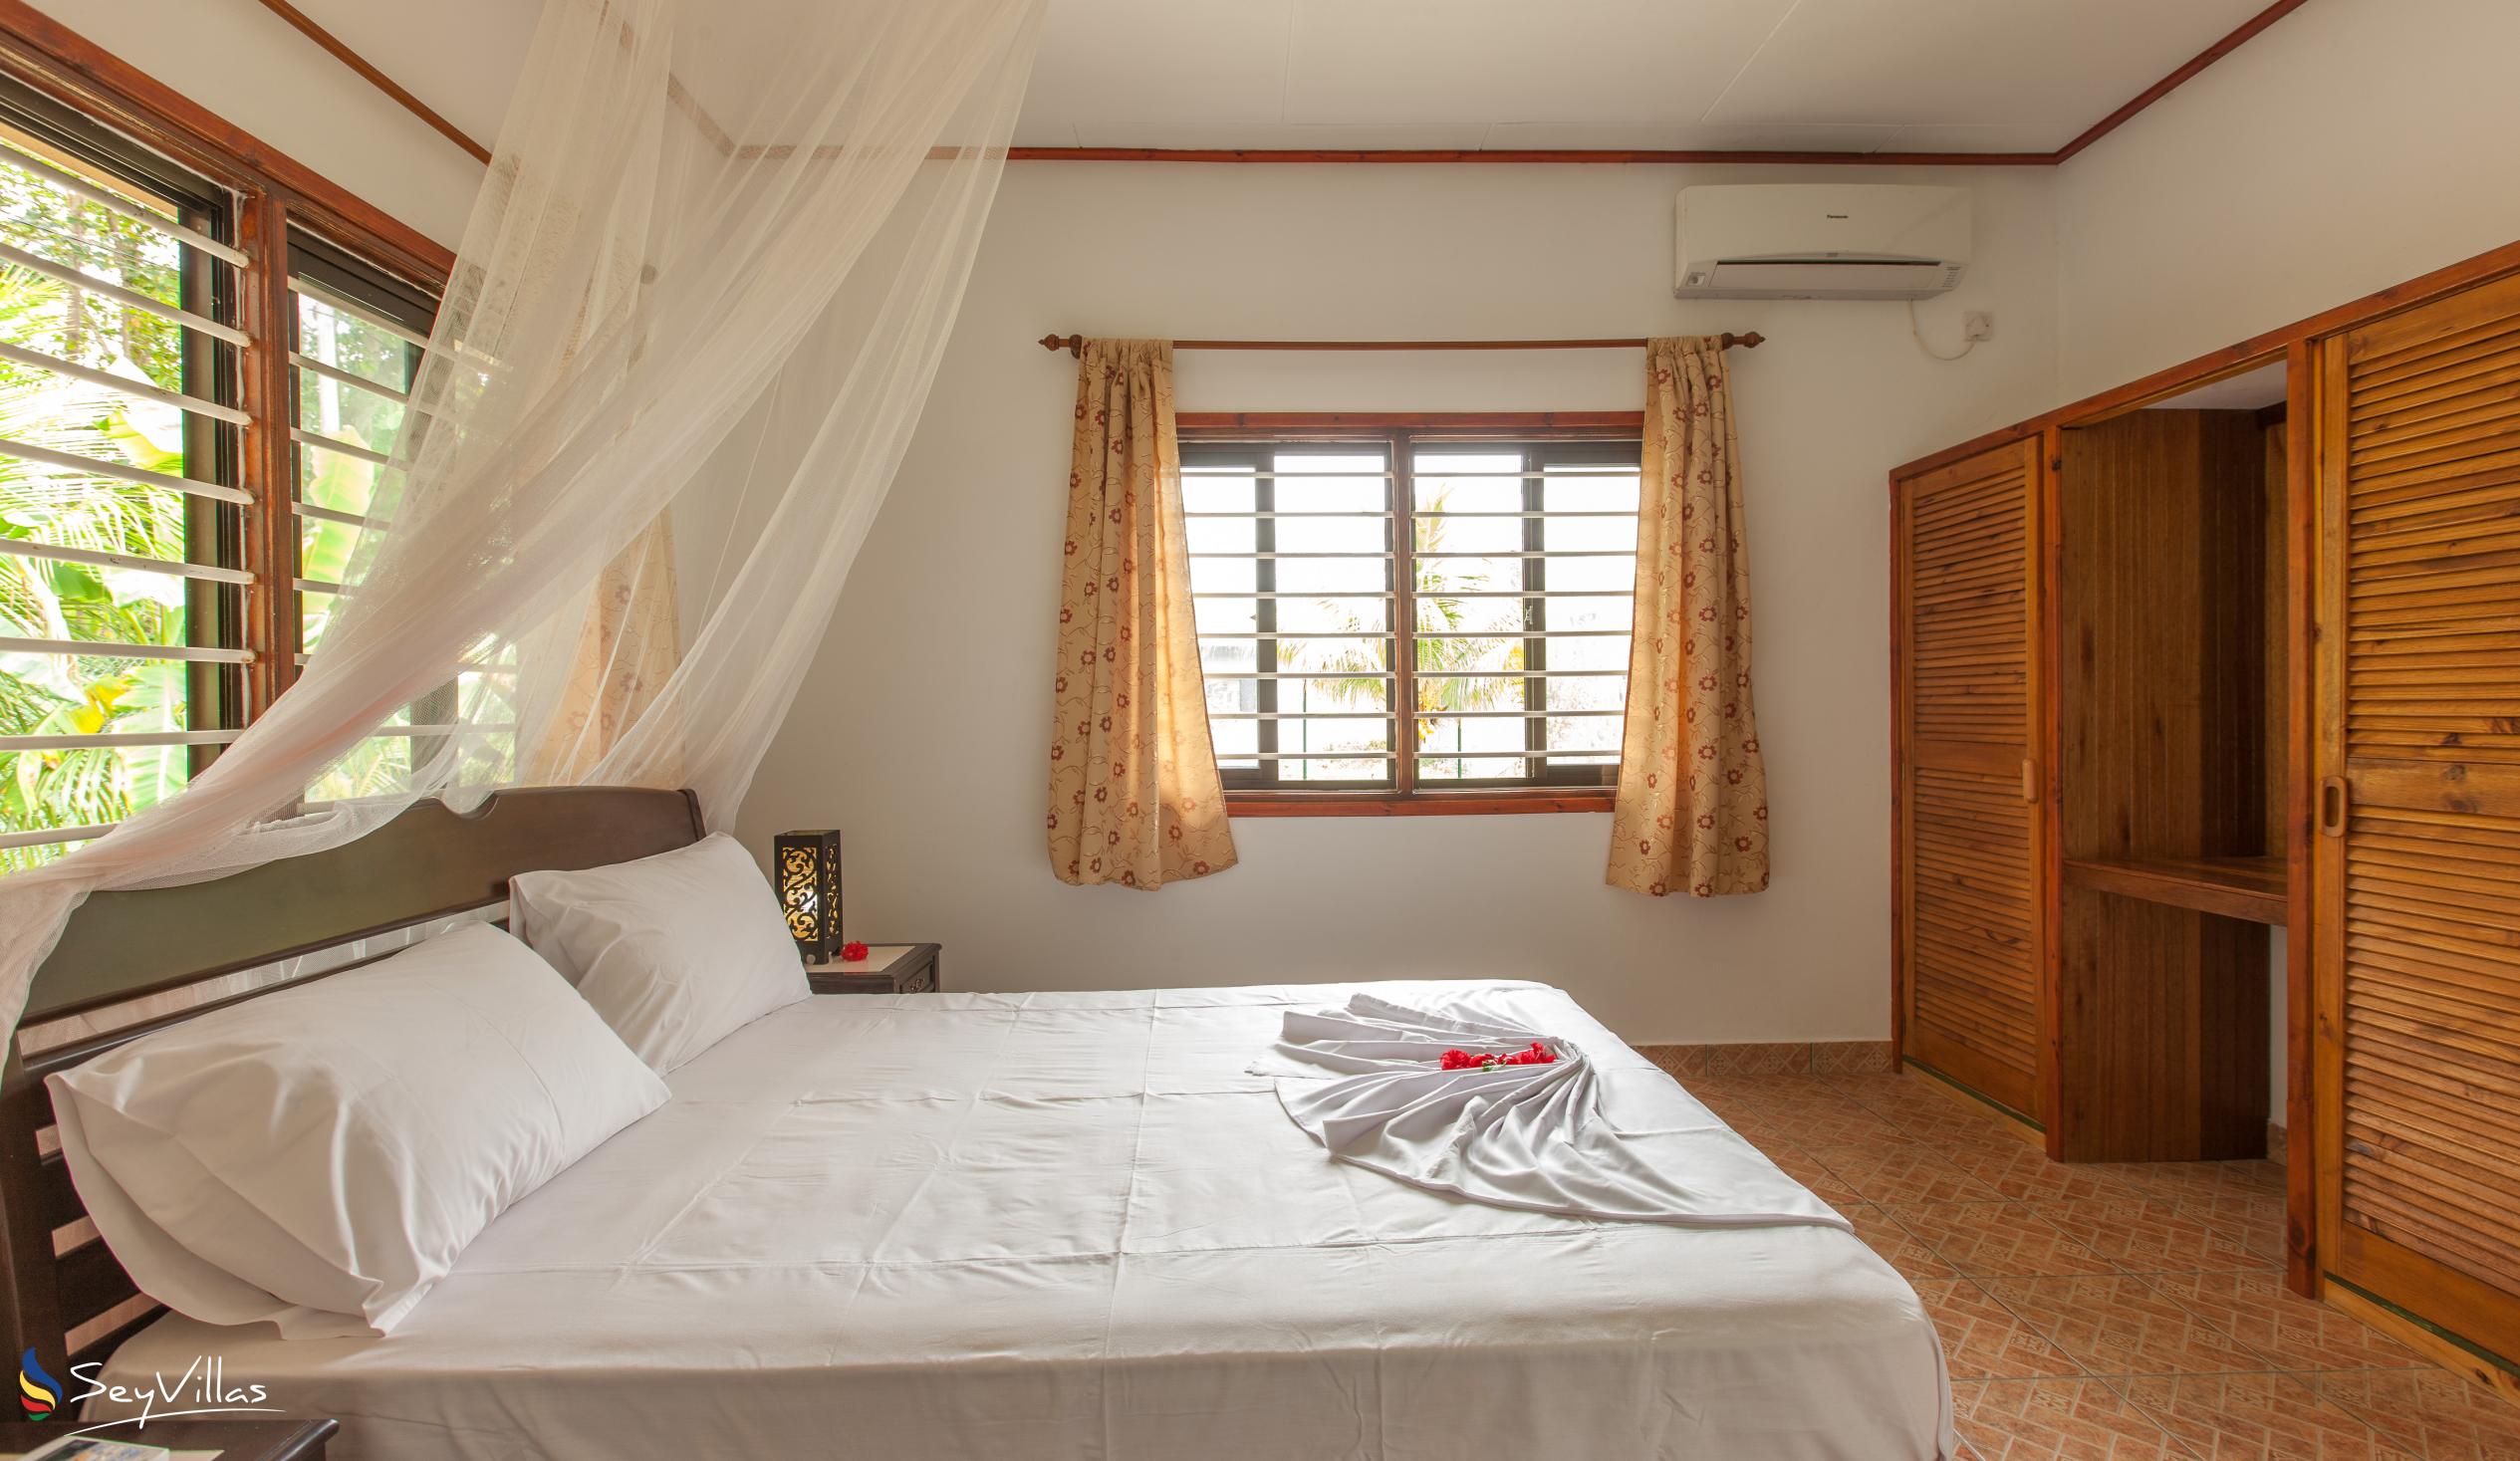 Foto 44: Zerof Self Catering  Apartments - Bungalow à 2 chambres - La Digue (Seychelles)